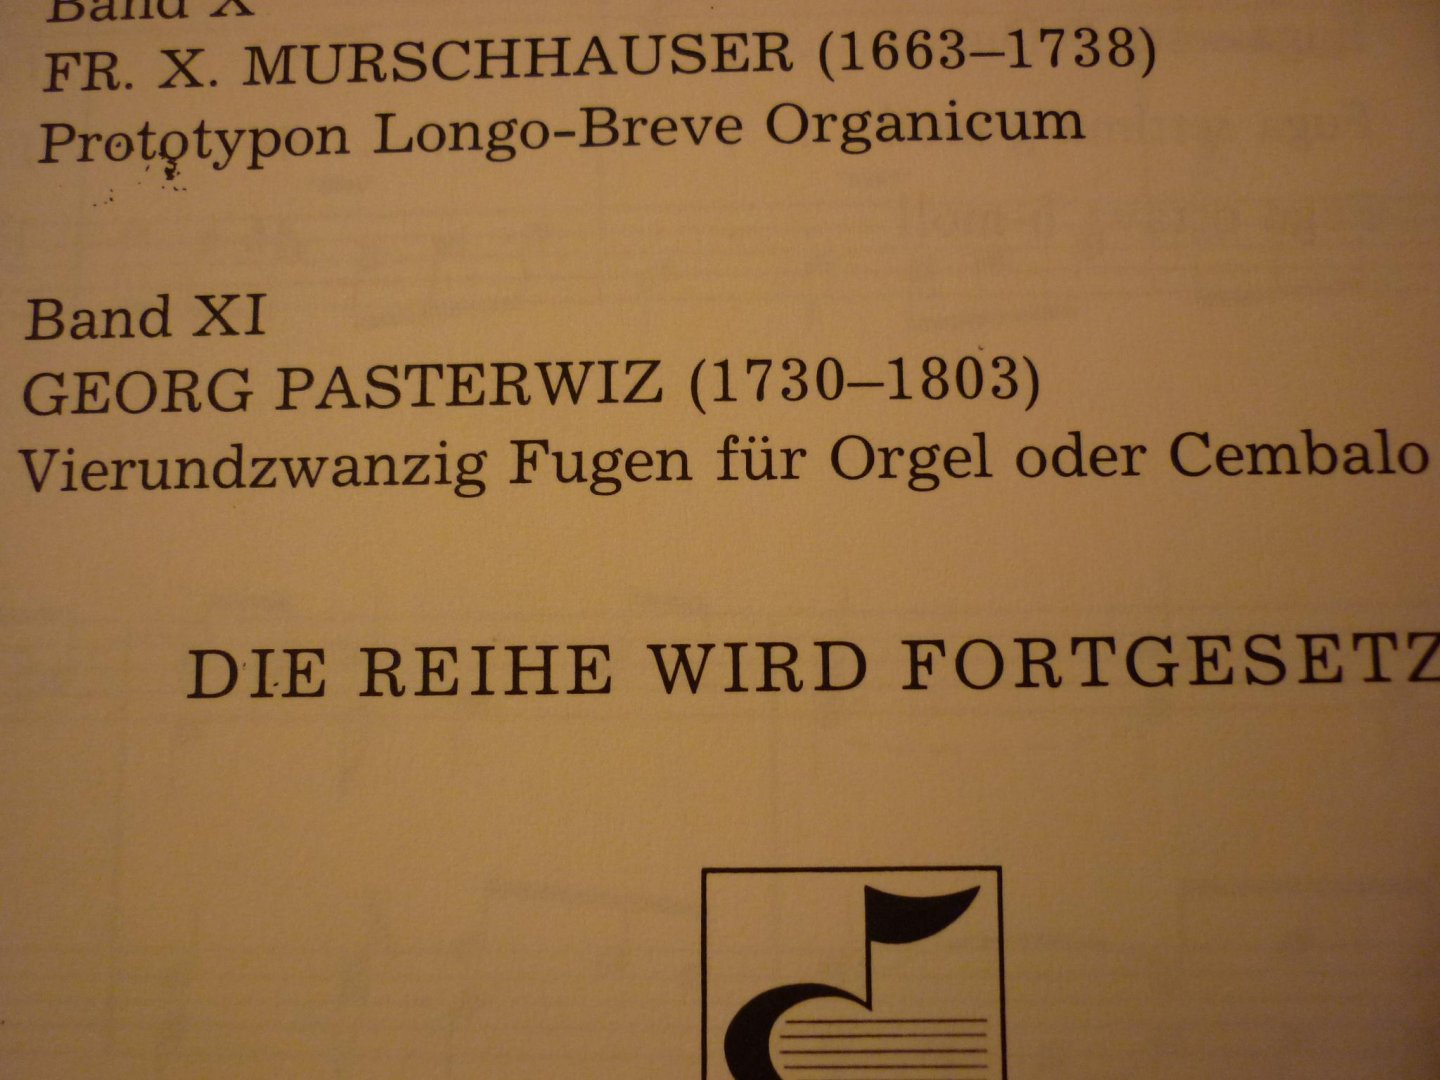 Pasterwiz; Georg (1730 - 1803) - 24 Fugen für Orgel; "Sueddeutsche Orgelmeister Des Barock"; Band XI